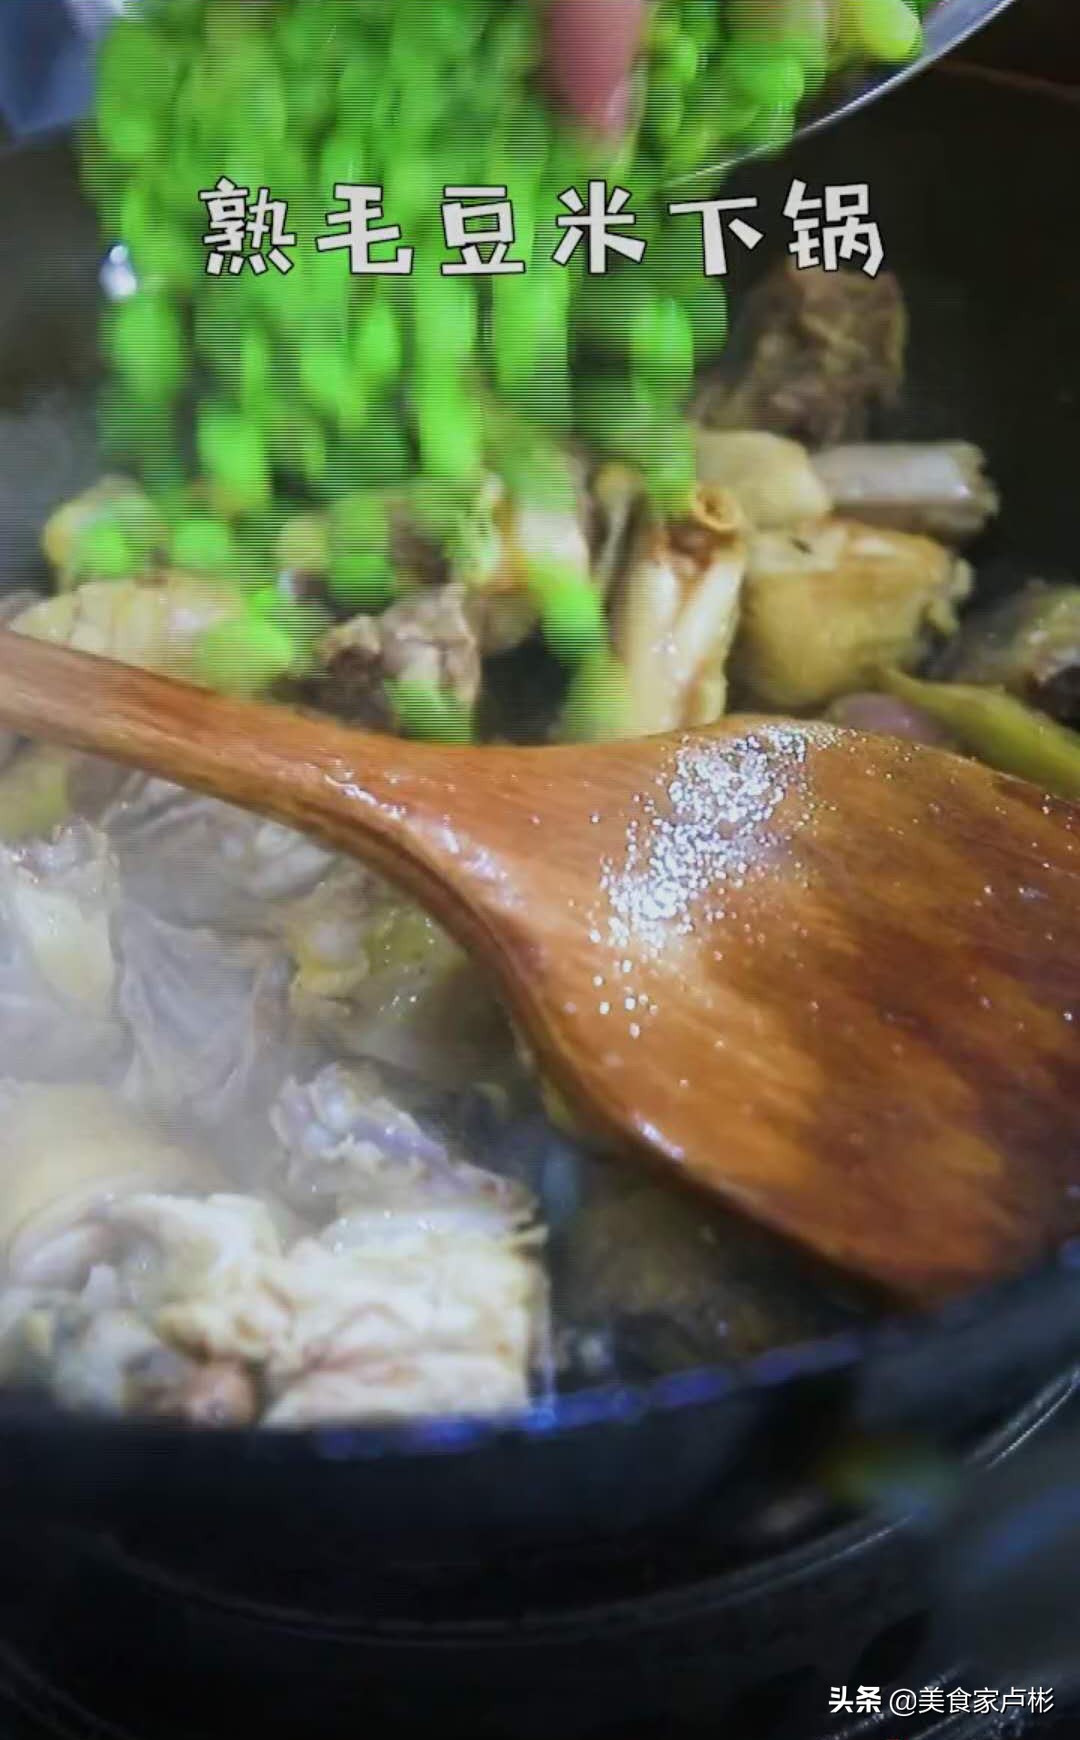 毛豆米烧鸡—记忆里既远又近的家乡菜